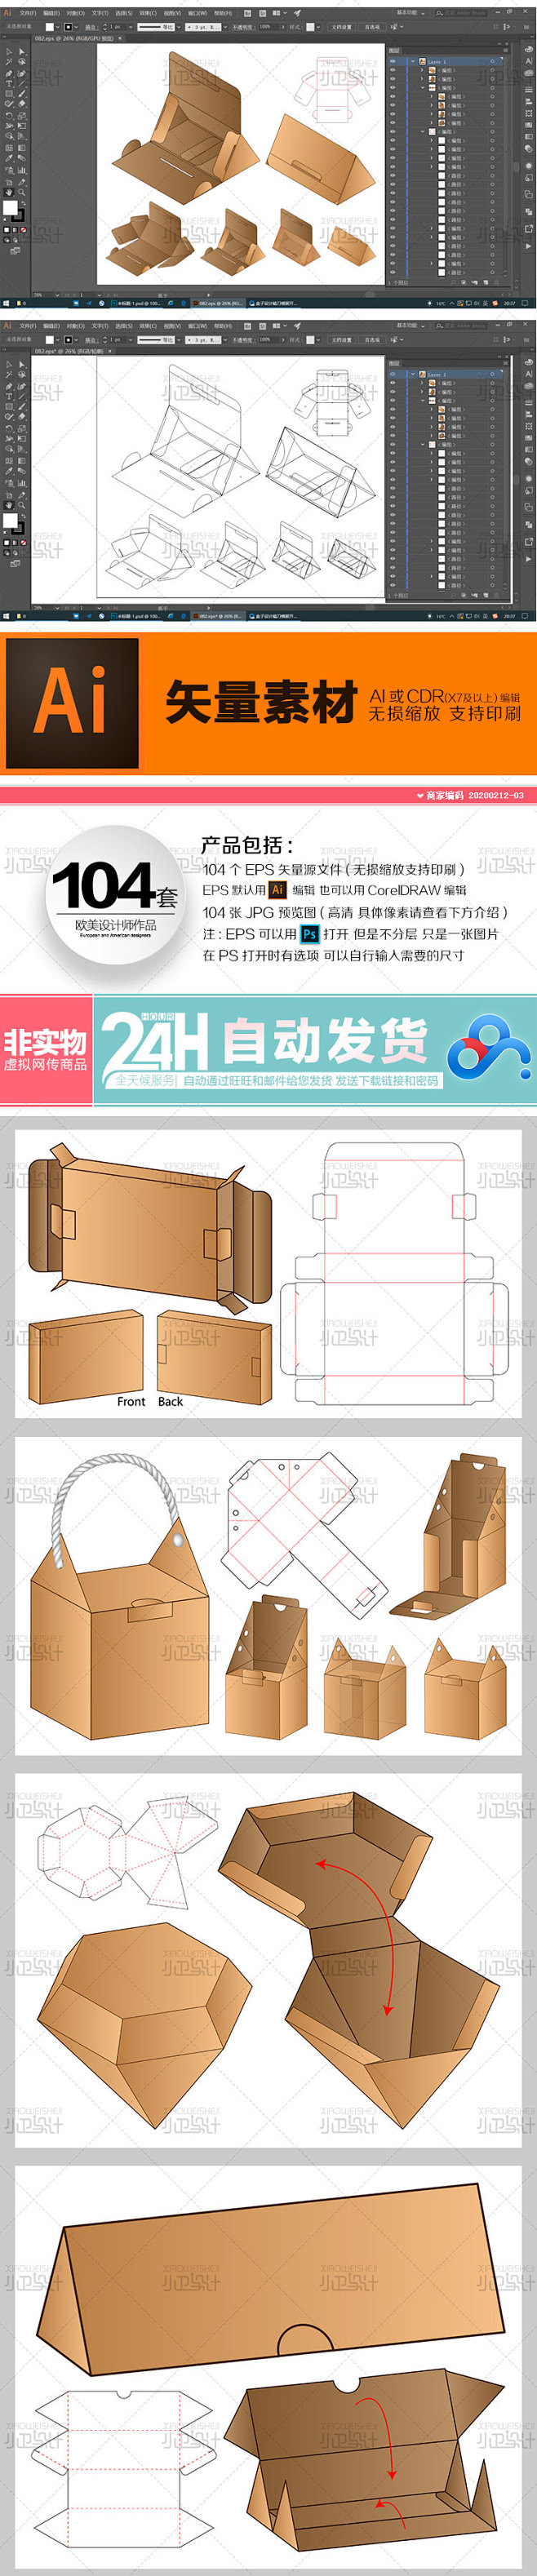 三角梯形异形包装盒袋子刀模展开图3d展示立体效果平面设计素材淘宝网